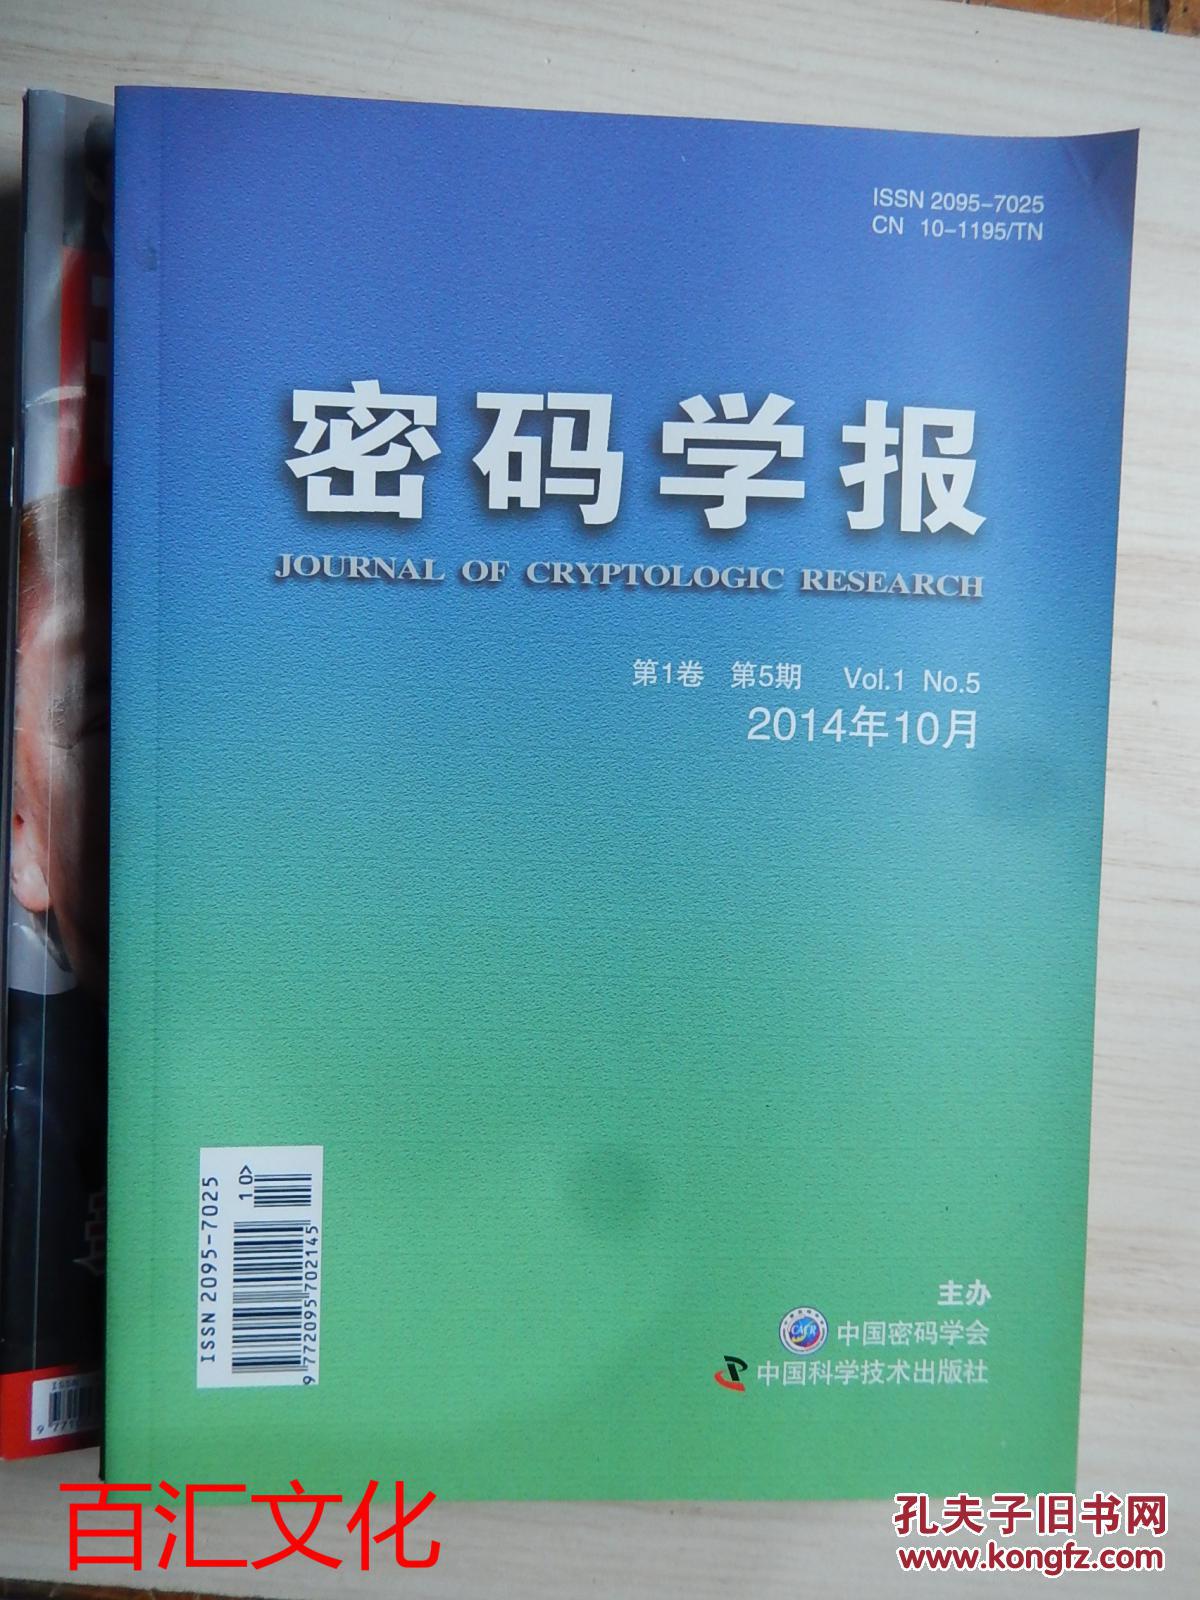 【图】密码学报 双月刊(2014年10月 第1卷 第5